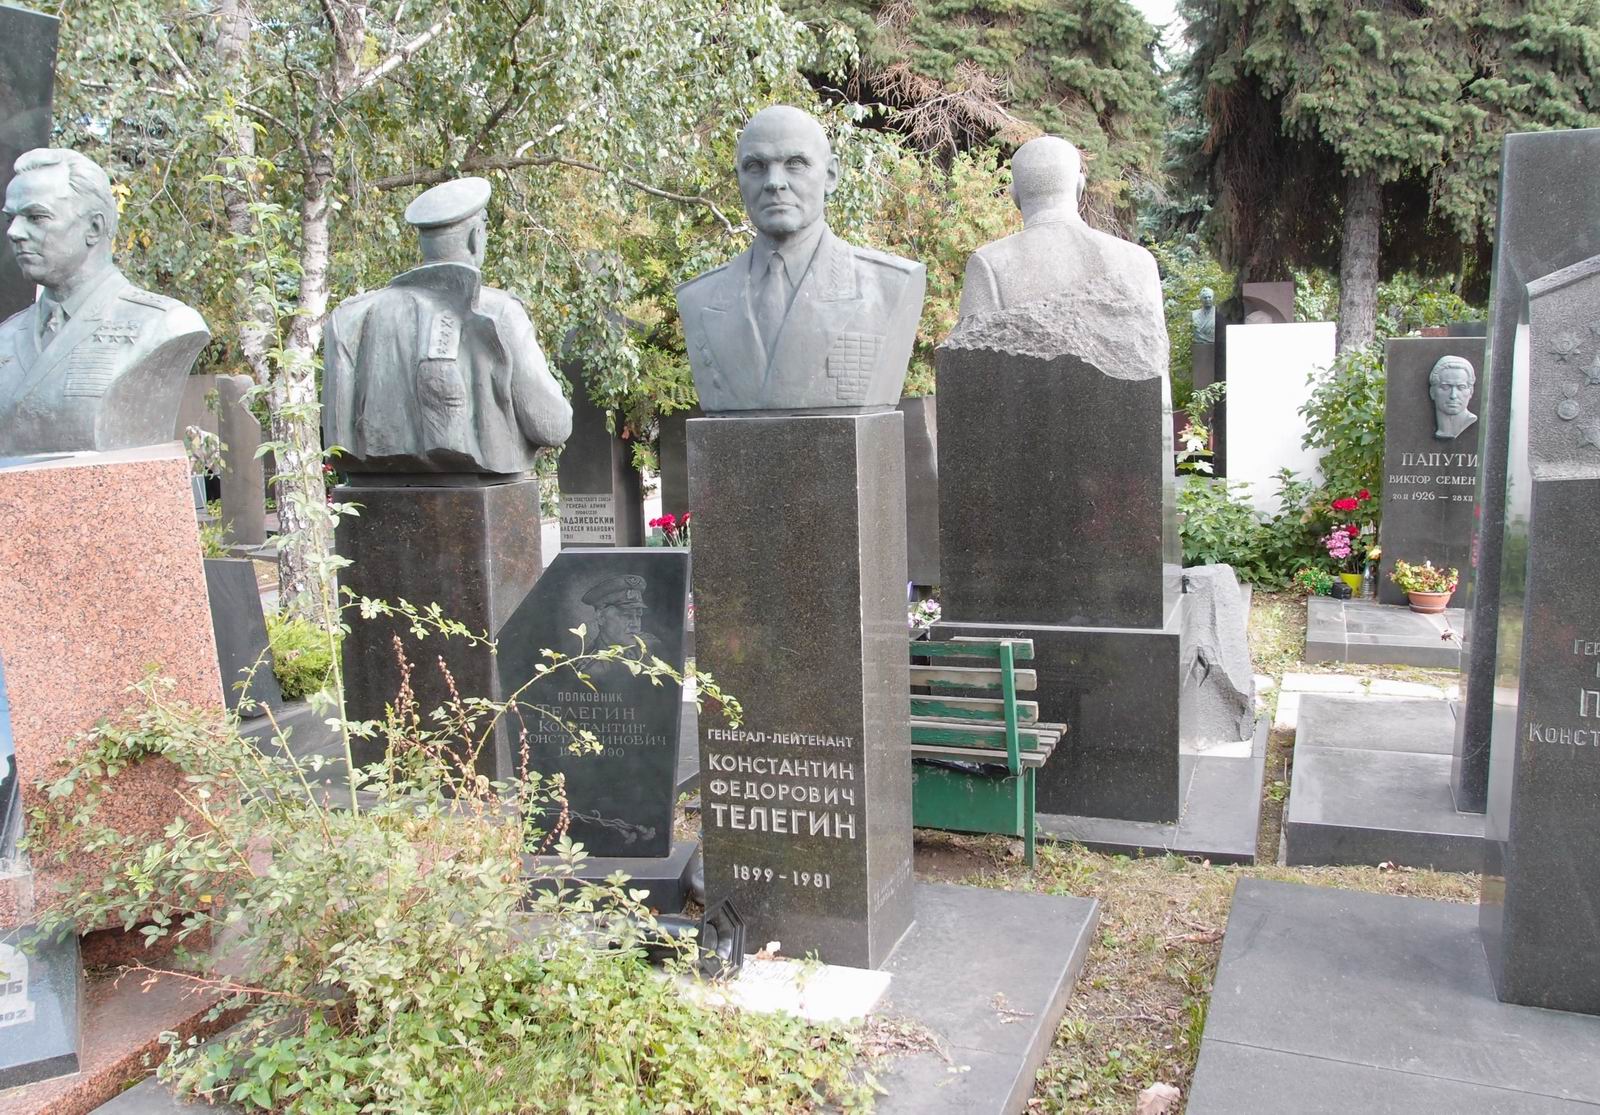 Памятник на могиле Телегина К.Ф. (1899-1981), ск. В.Керенский, арх. И.Лодагов, Г.Муравьёва, на Новодевичьем кладбище (7-18-14).